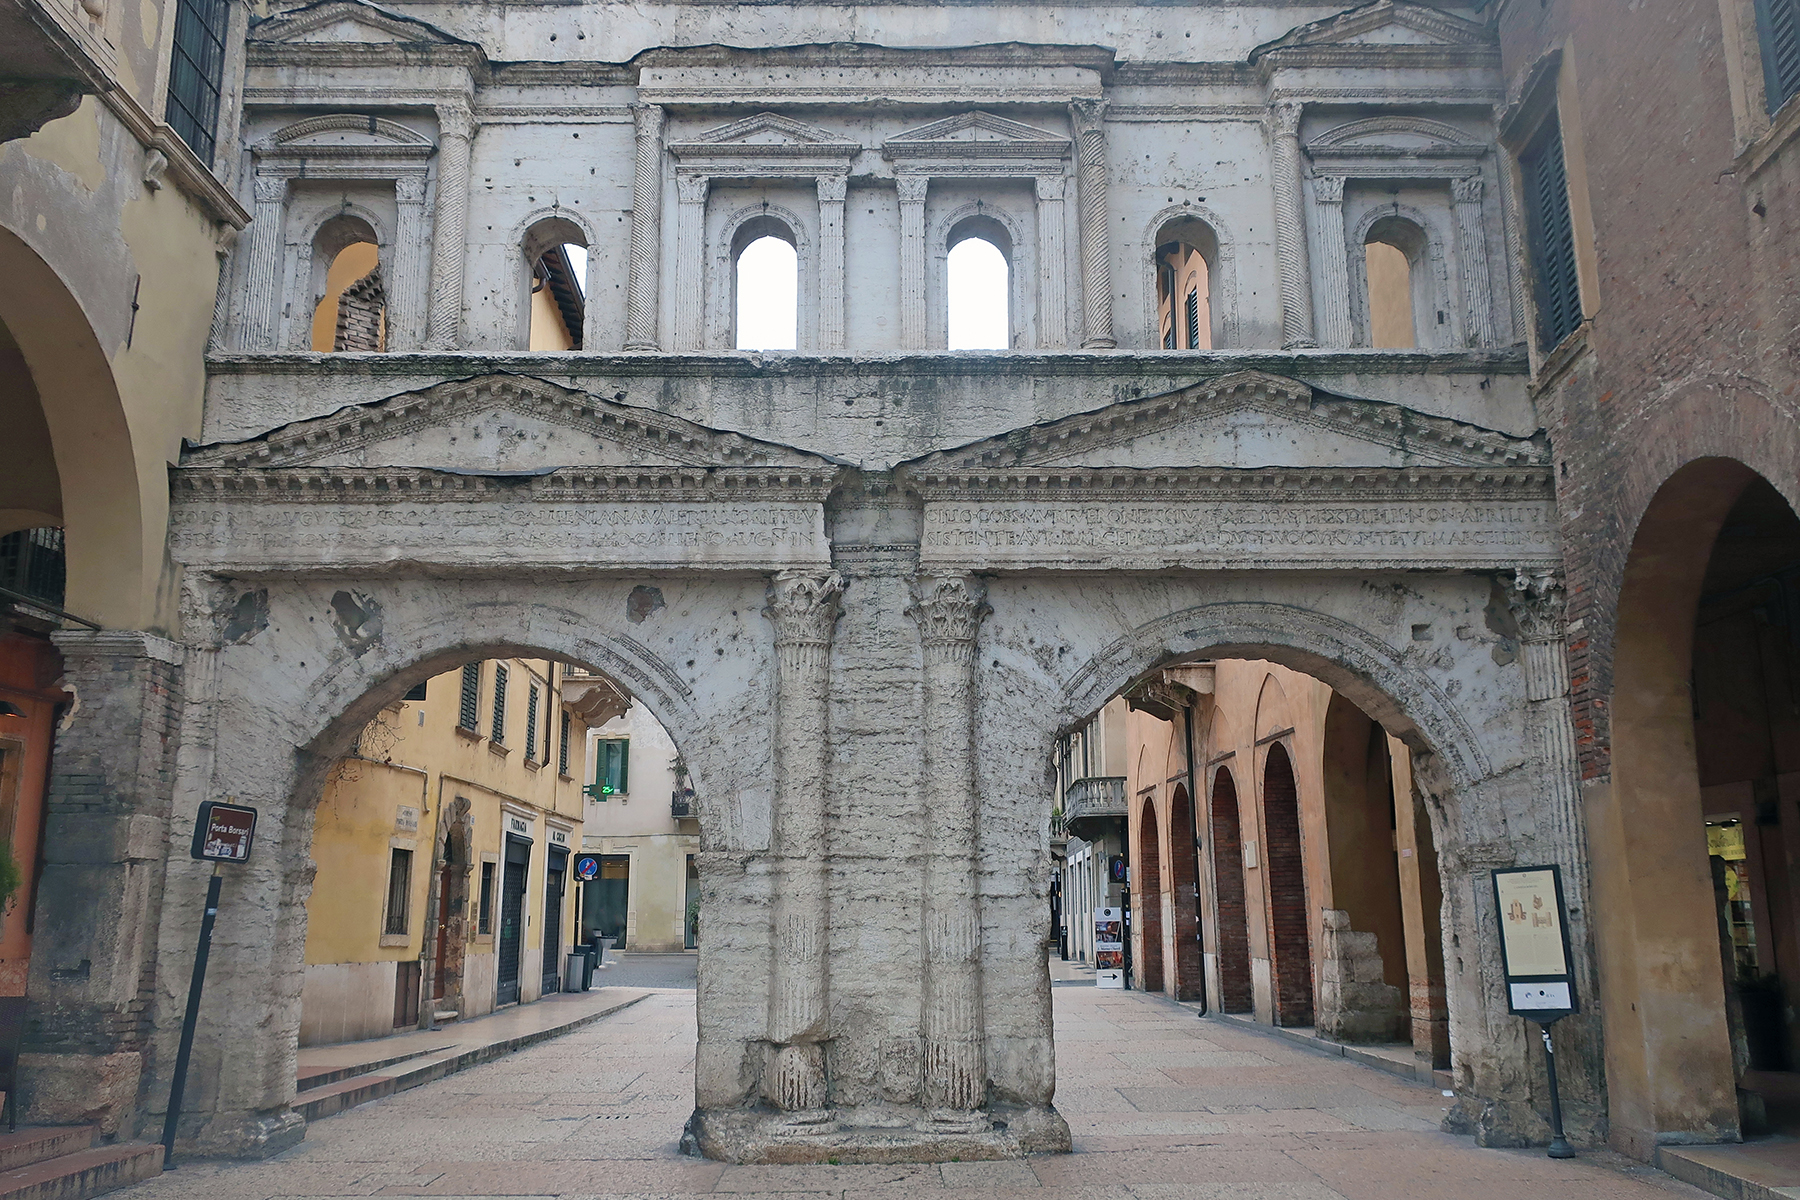 Verona verzaubert nicht nur Verliebte: 13 Tipps für Verona  